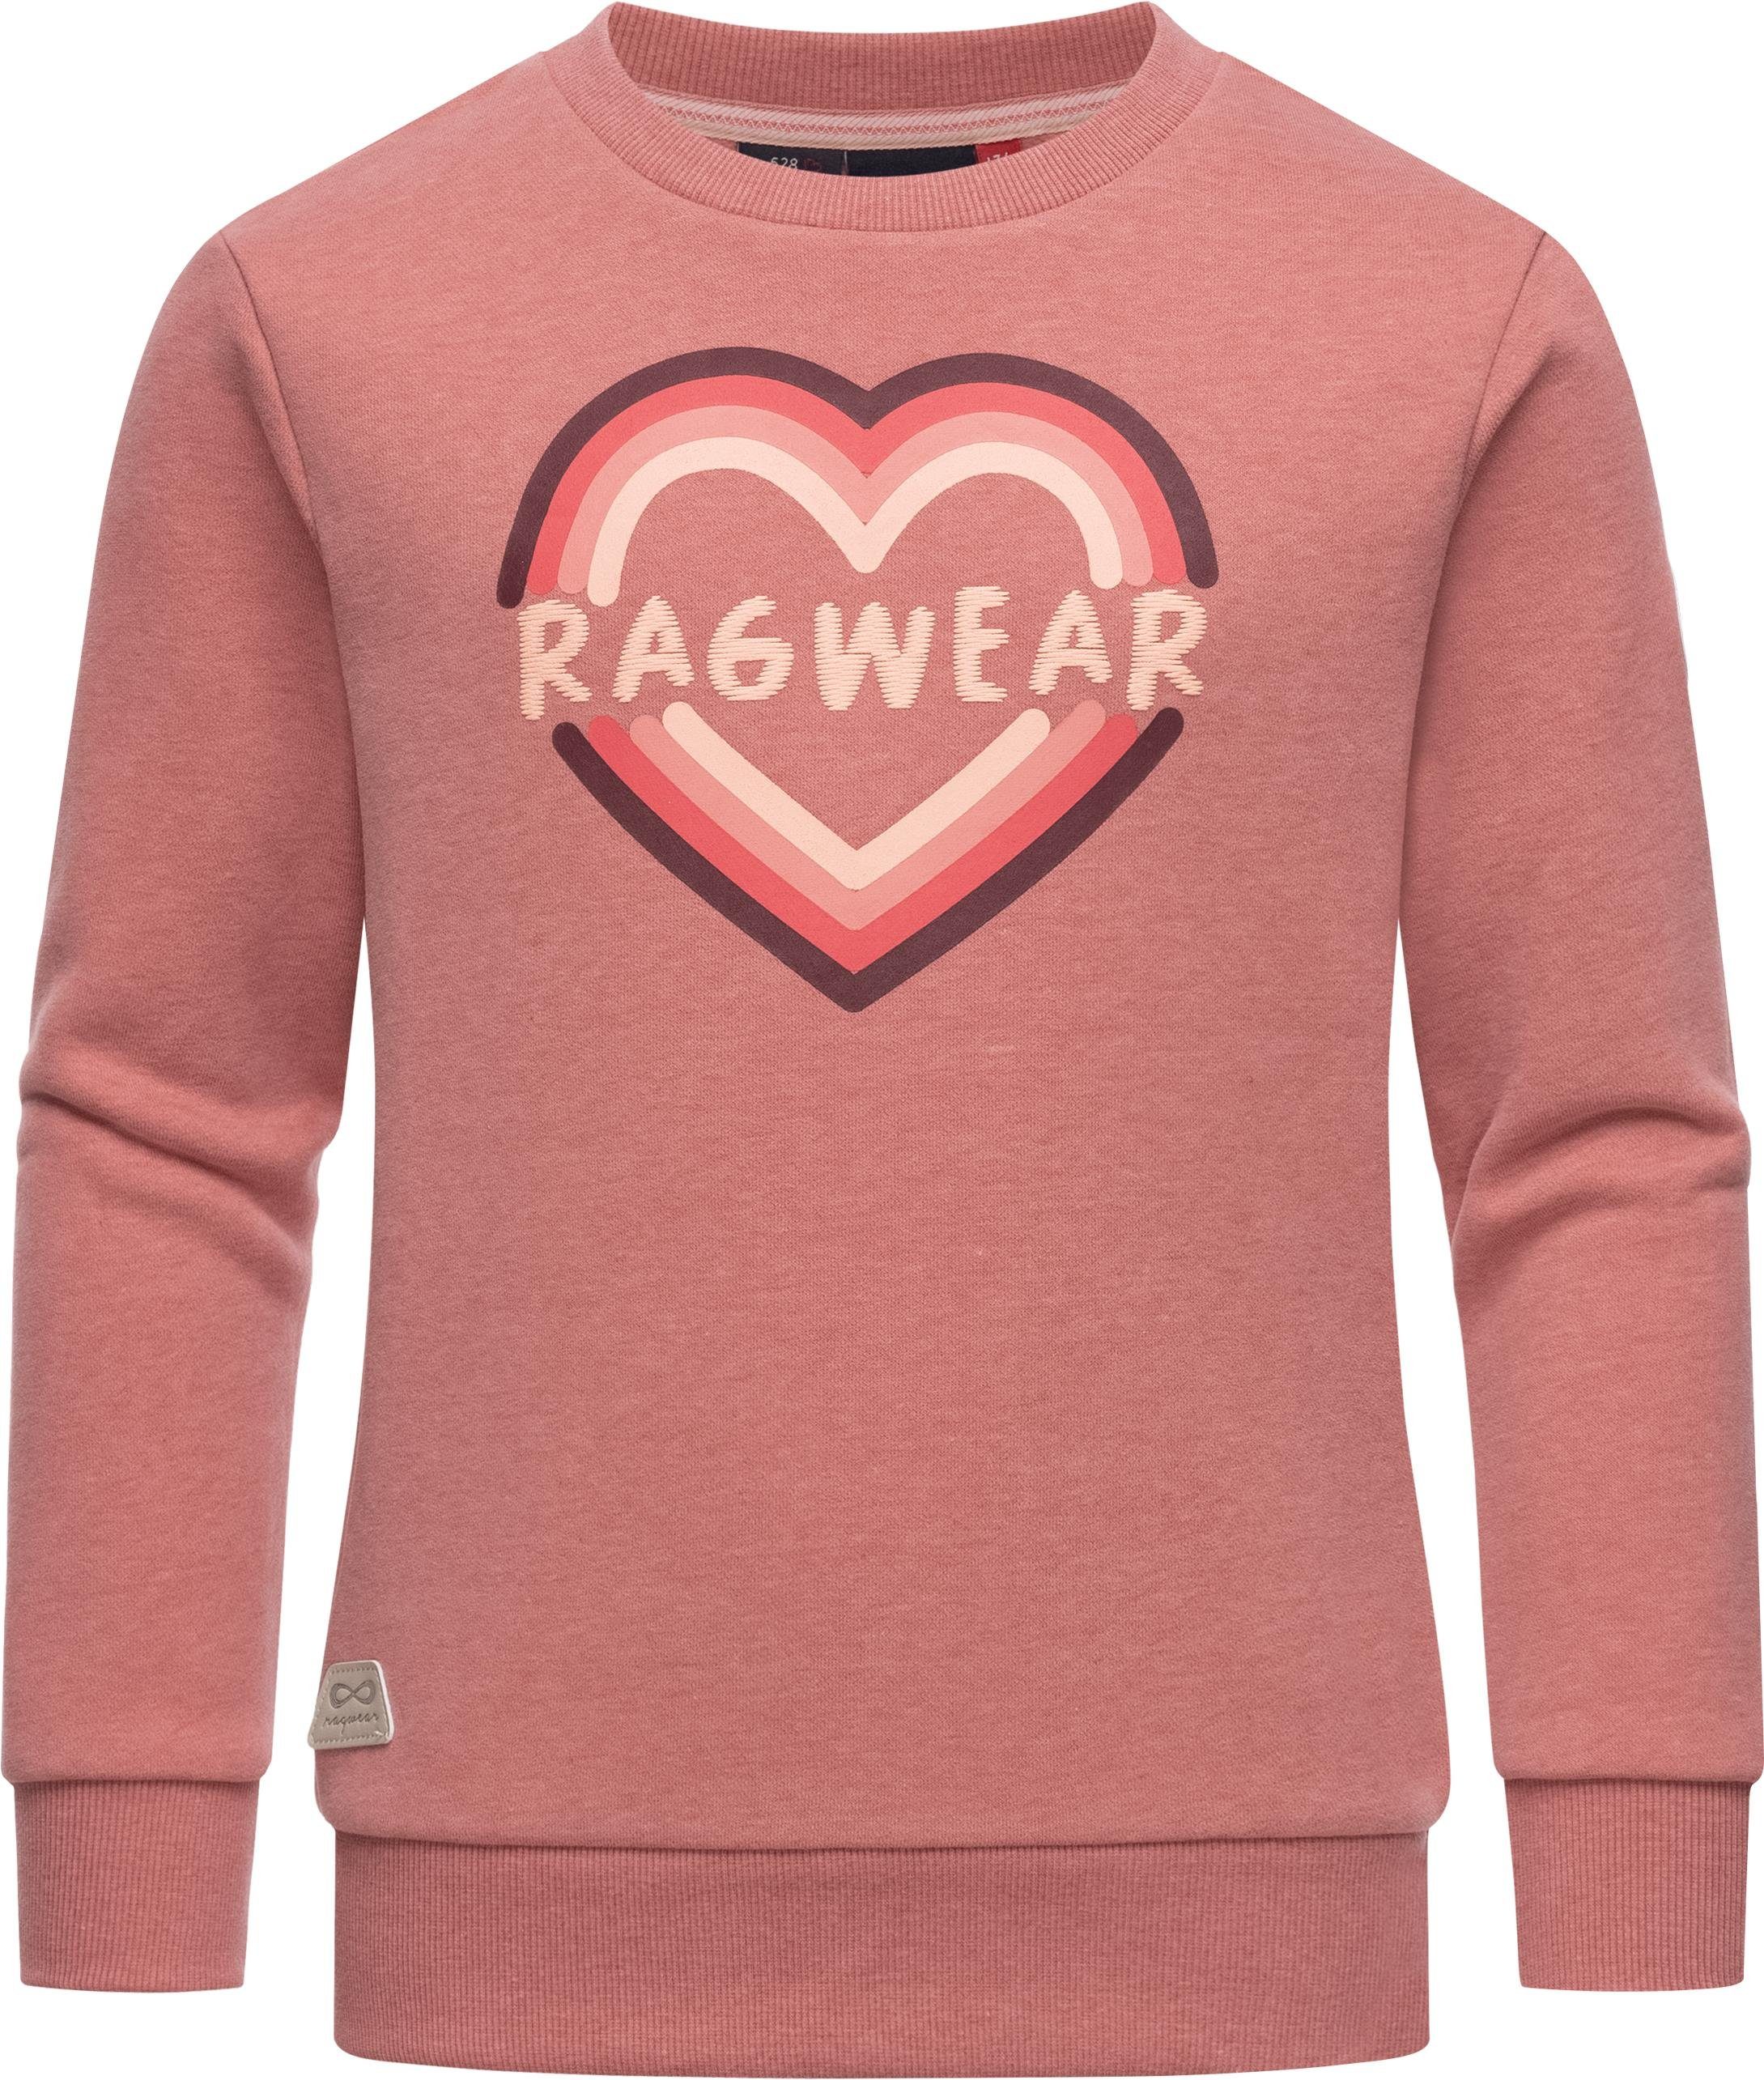 Ragwear Sweater Evka Print stylisches Mädchen Sweatshirt mit coolem Logo Print rosa